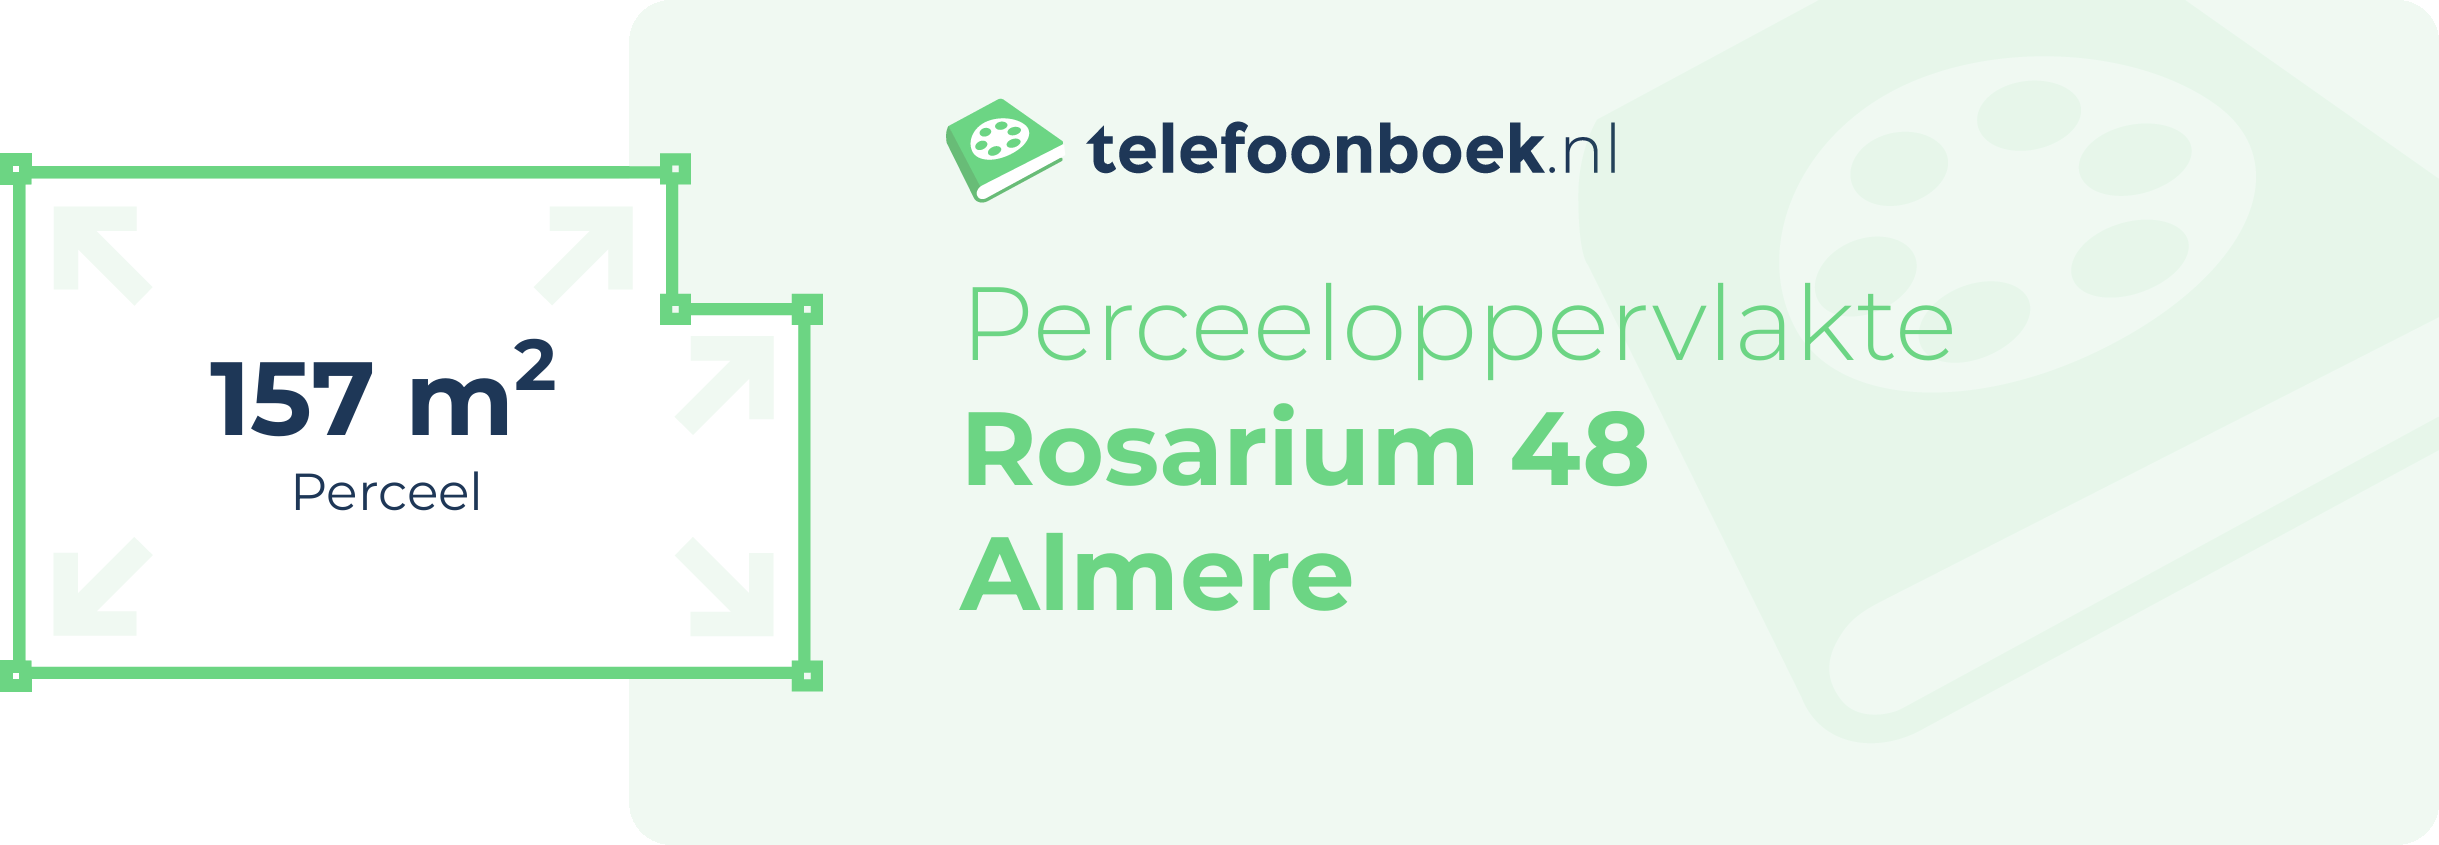 Perceeloppervlakte Rosarium 48 Almere